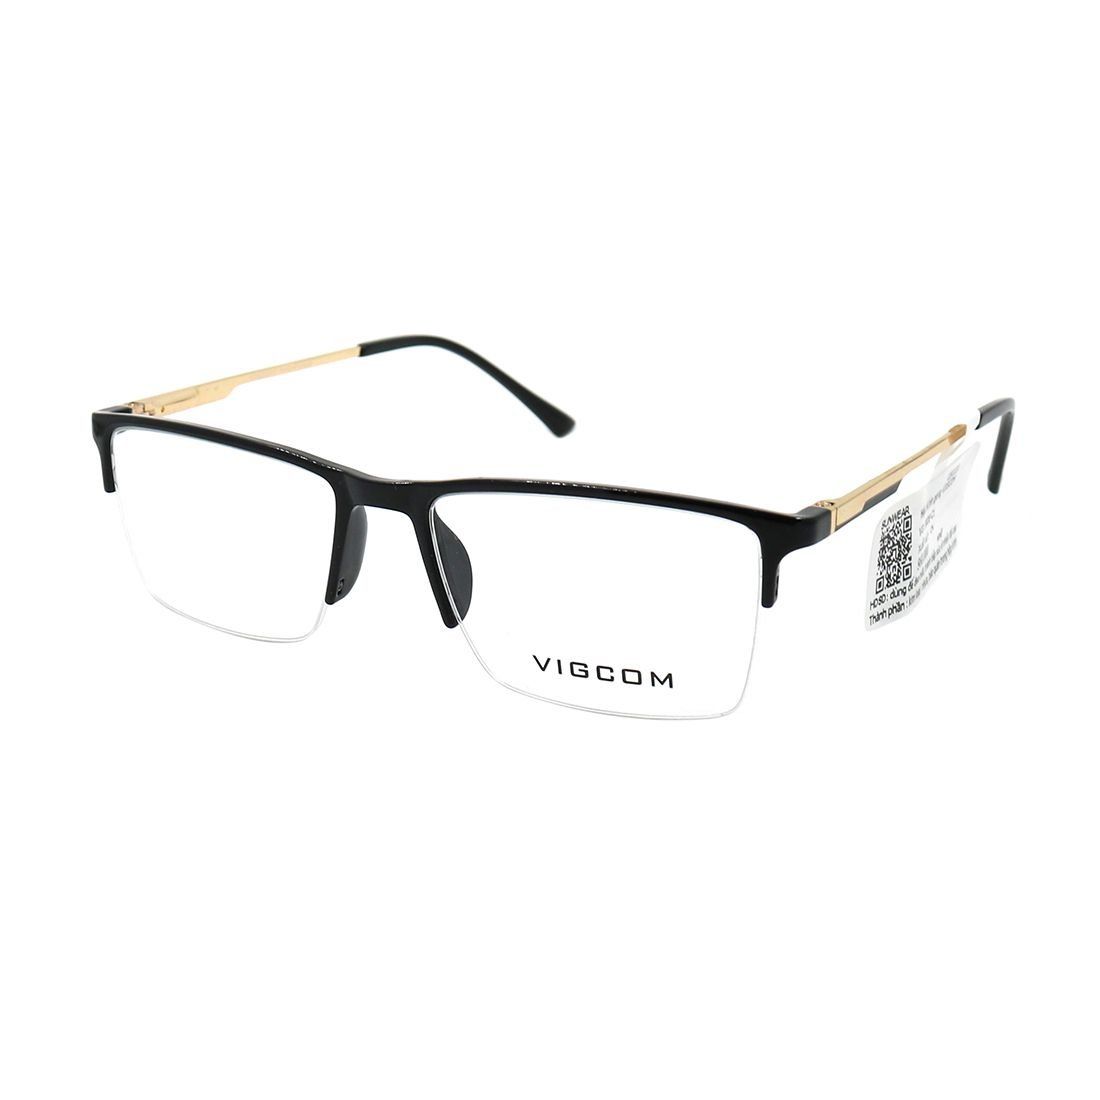  Gọng kính Vigcom VG5806 C1 